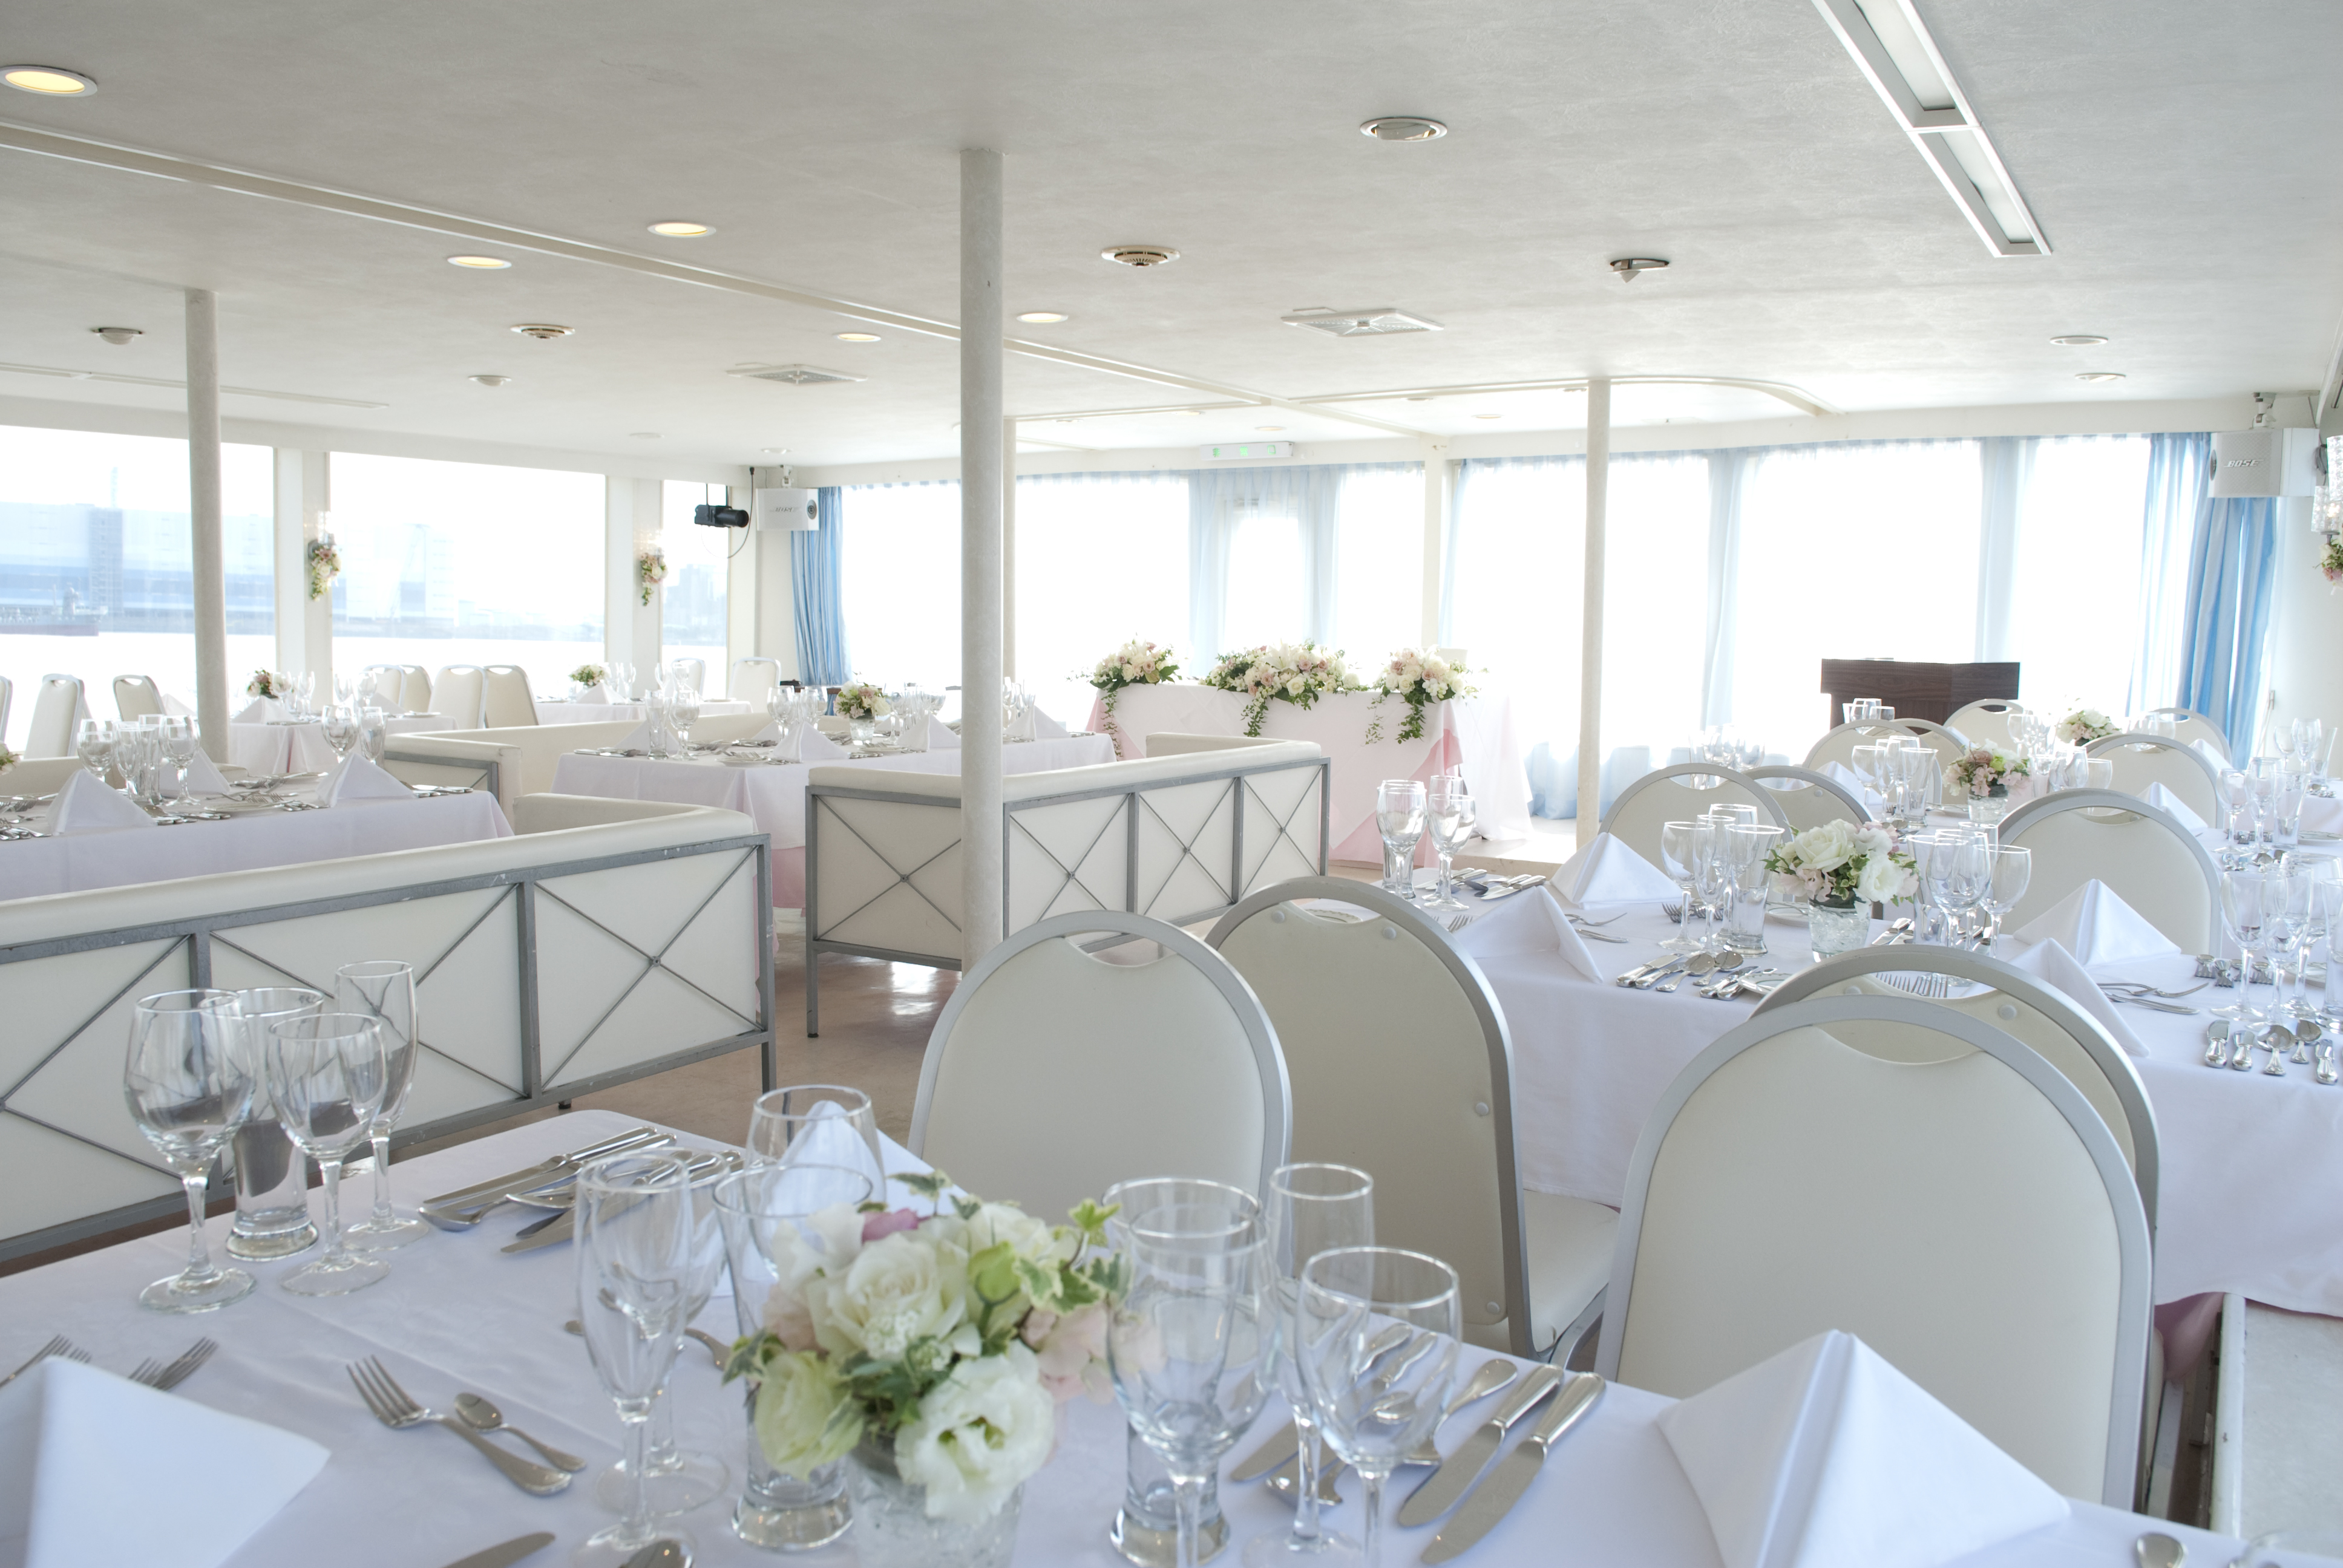 テーブルクロスや卓上装花で豪華に装飾されたセレブリティ2号の船内